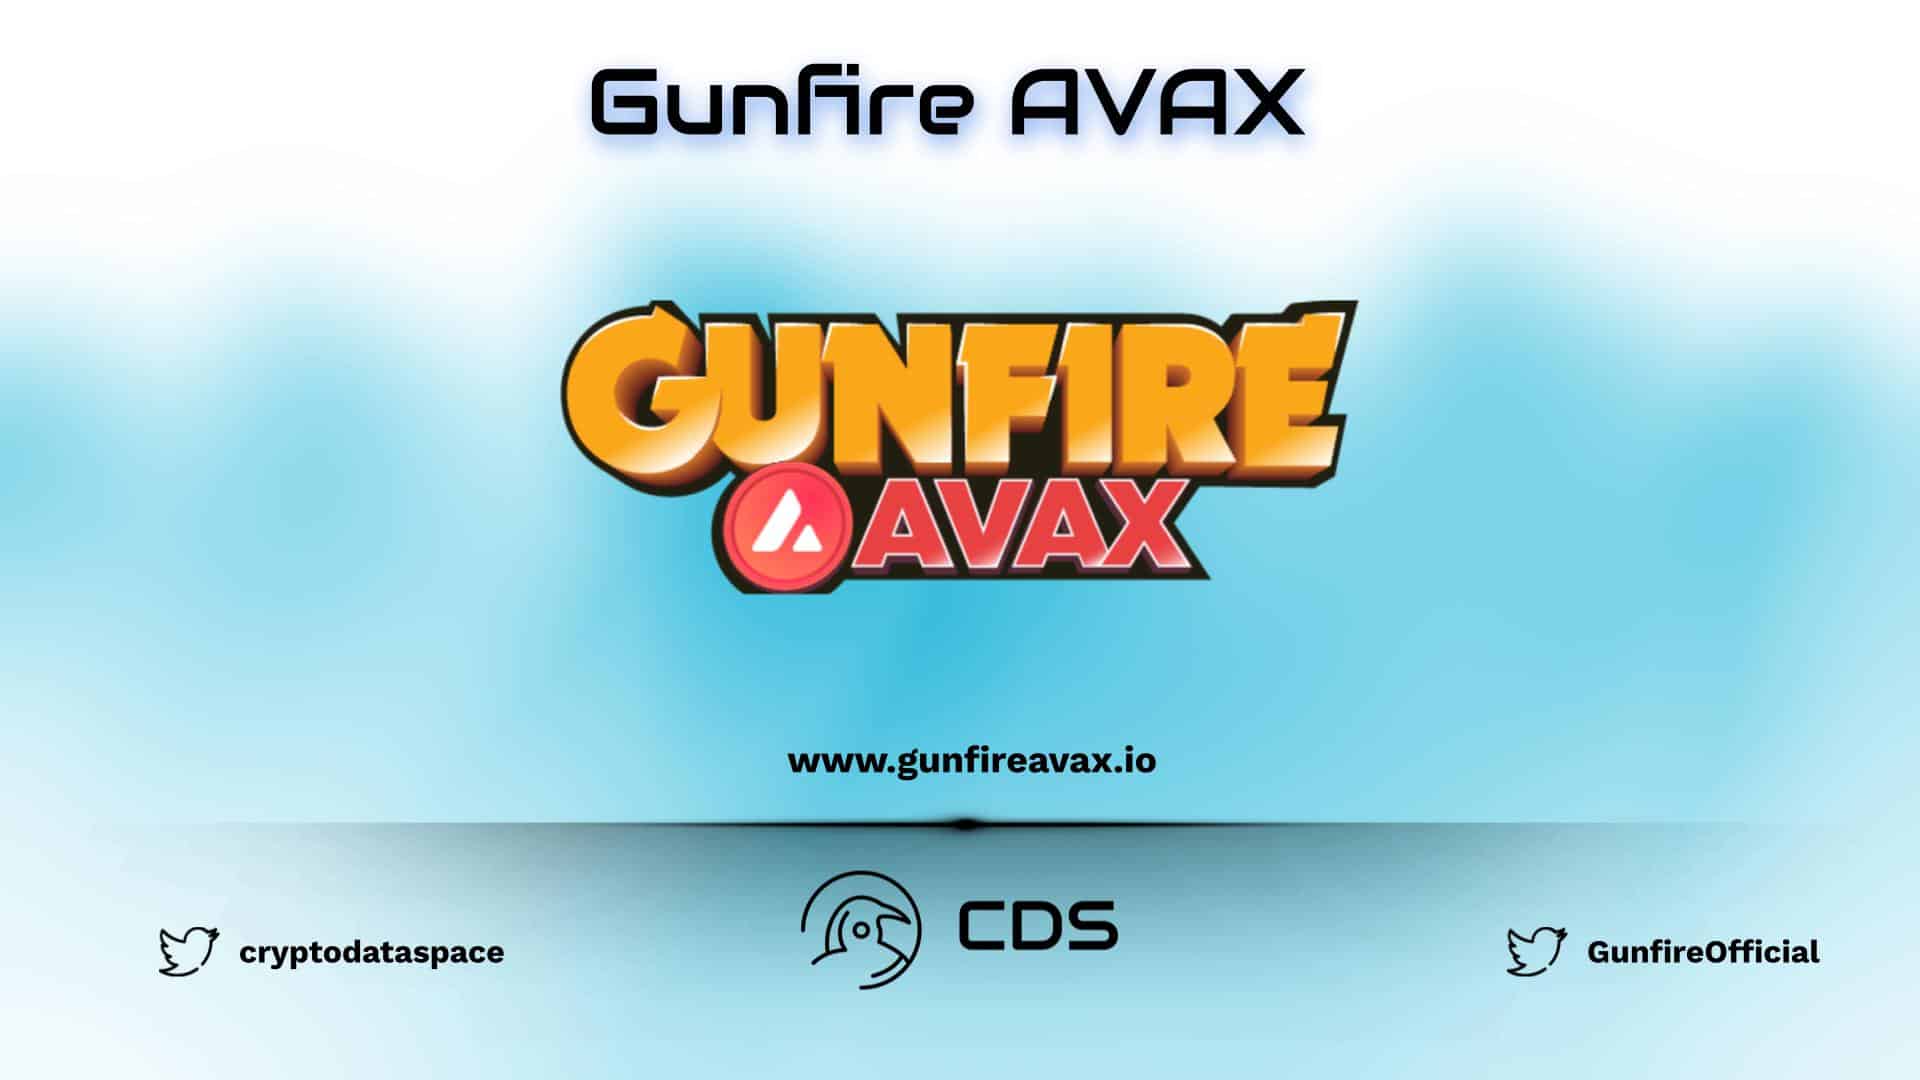 Gunfire Avax